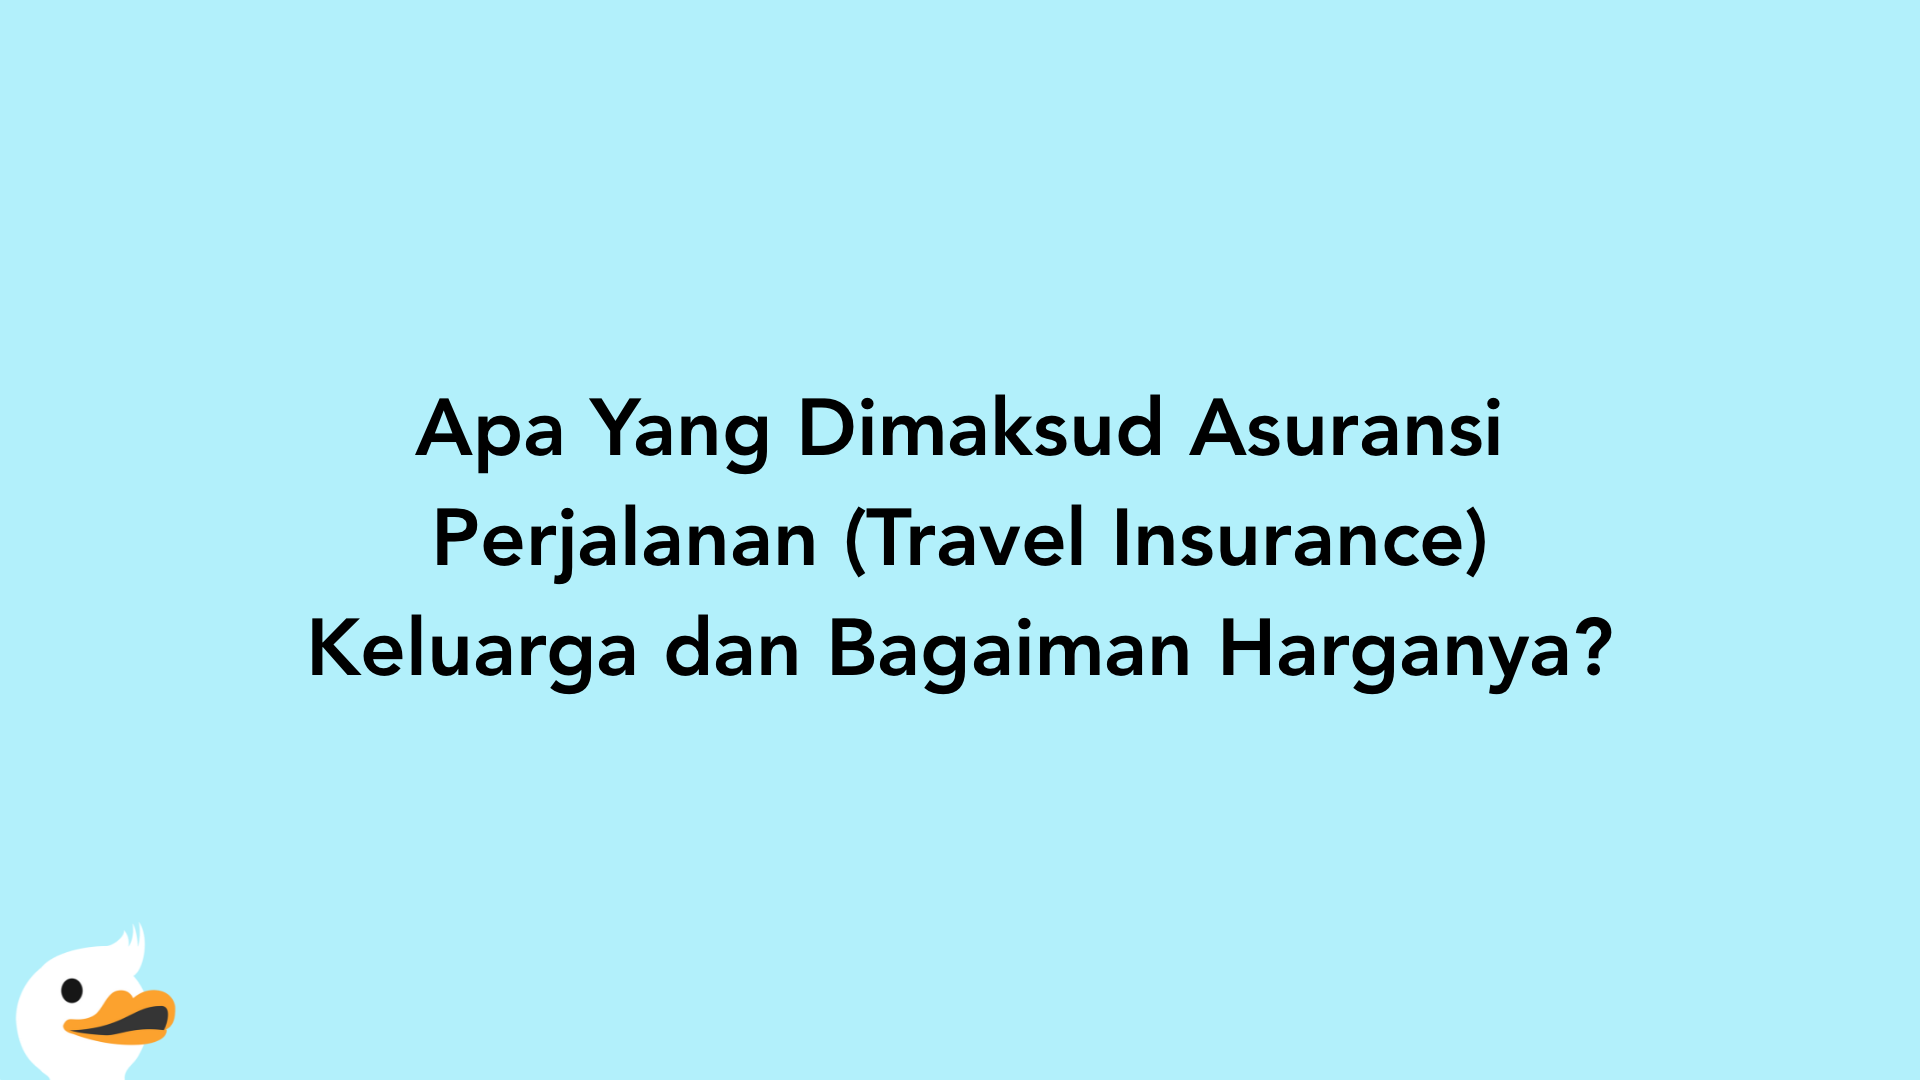 Apa Yang Dimaksud Asuransi Perjalanan (Travel Insurance) Keluarga dan Bagaiman Harganya?